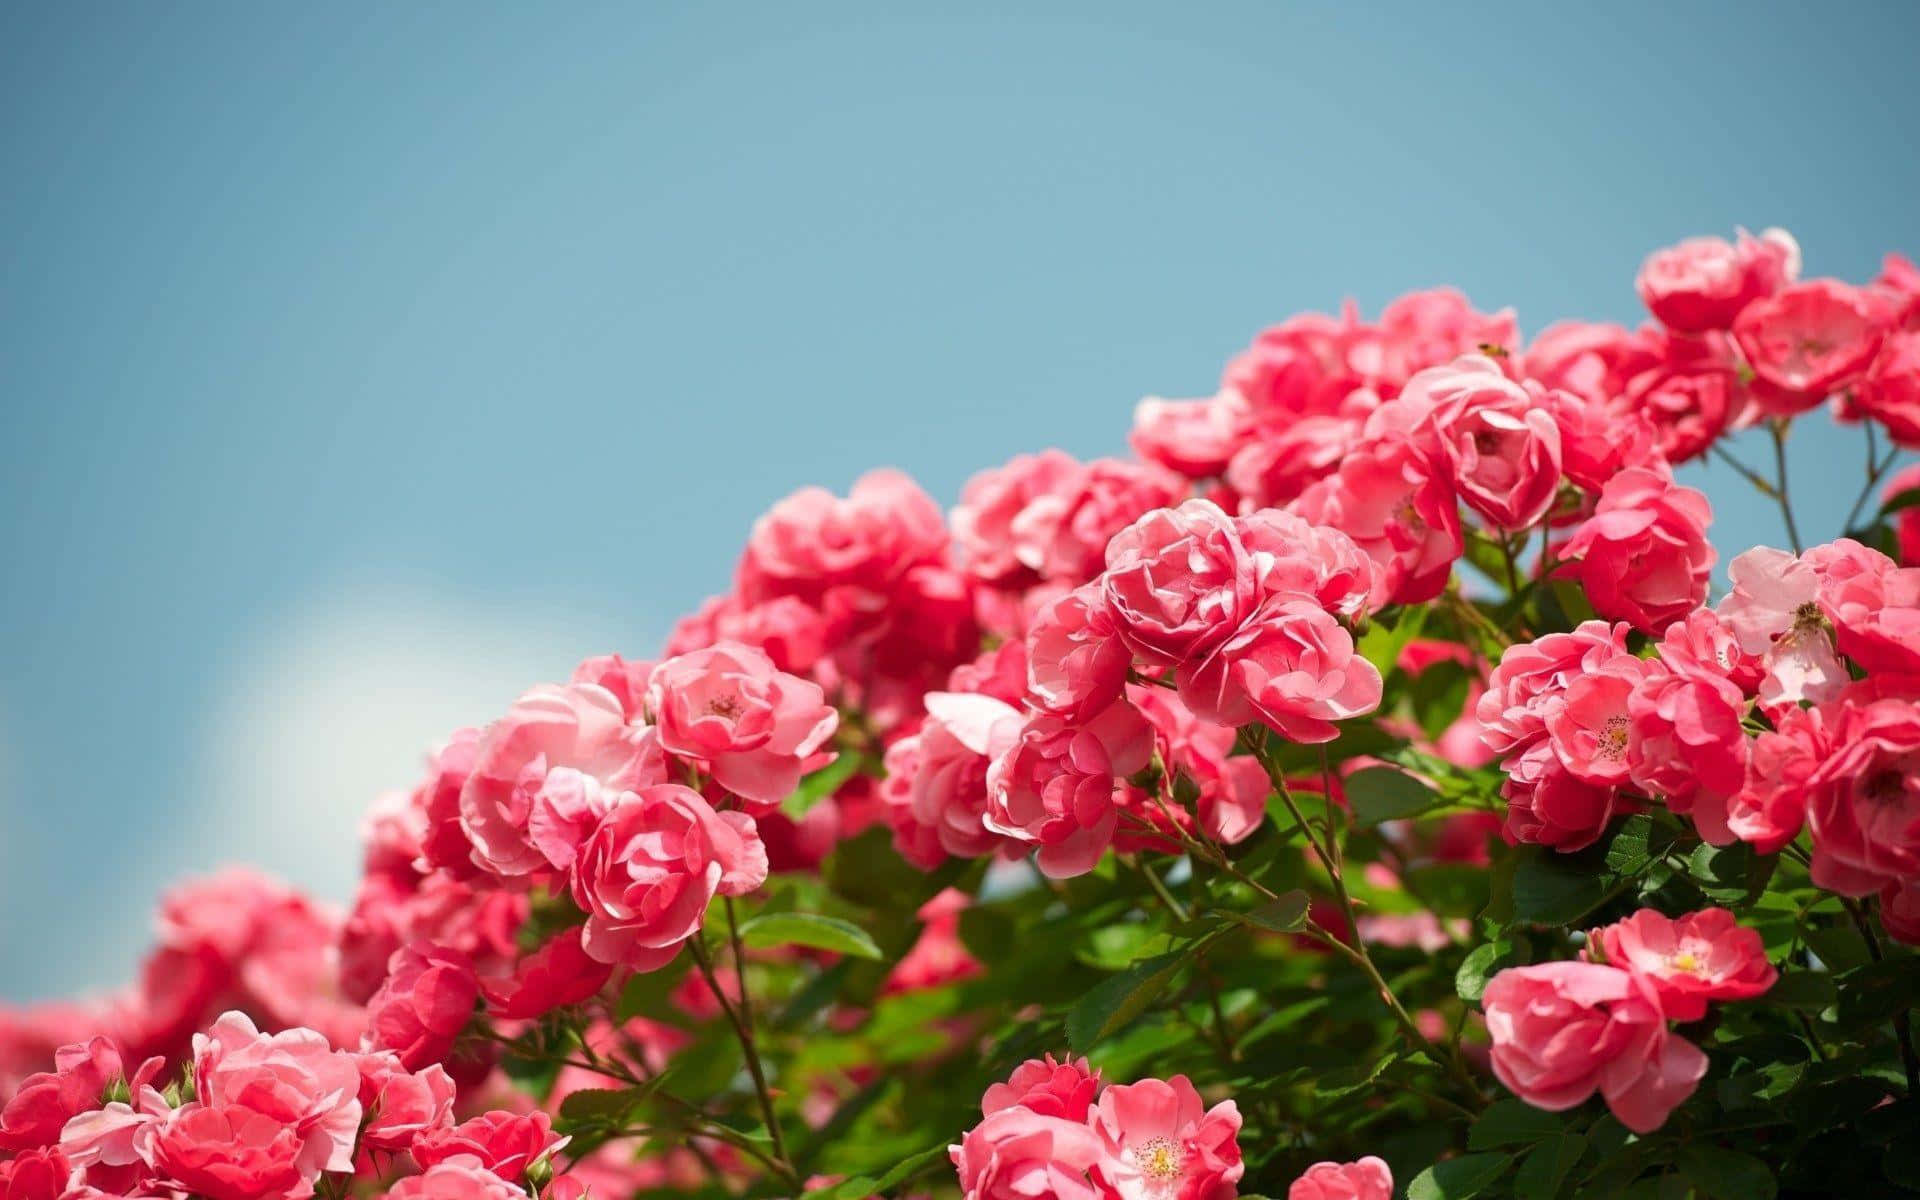 Ngắm những bức ảnh miễn phí của hoa hồng ở vườn, và bạn sẽ cảm nhận được vẻ đẹp không thể nào tả được của thiên nhiên. Hãy nhấp chuột để khám phá bộ sưu tập Free Garden Roses Pictures với những bông hoa rực rỡ và tinh tế.